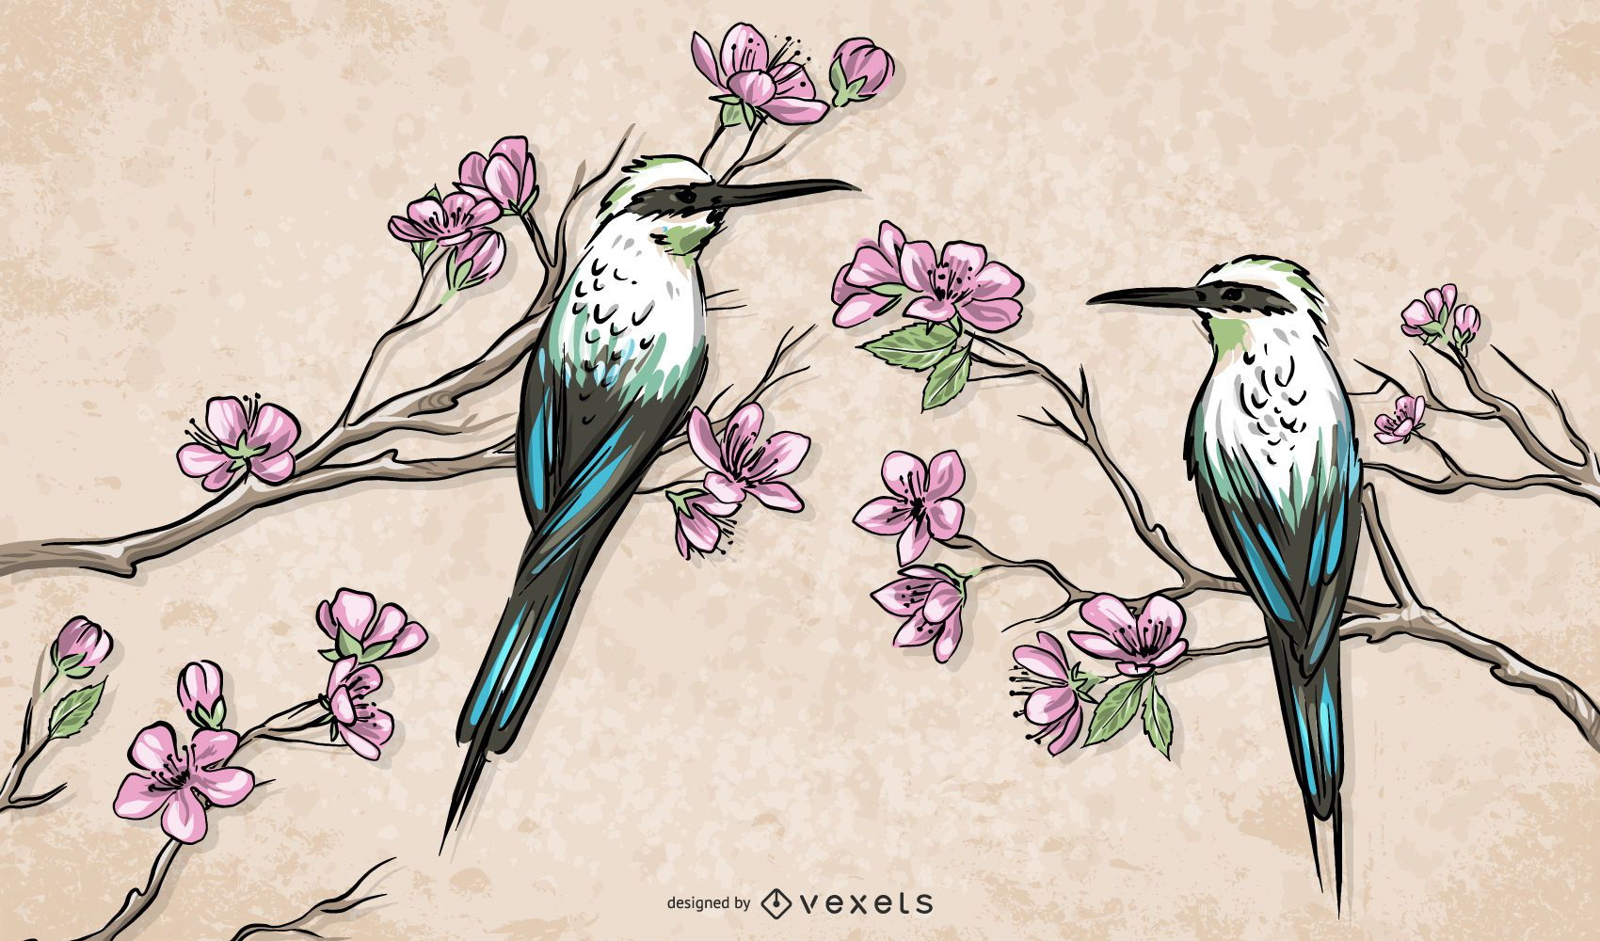 Pájaros chinos parados en la ilustración de ramas